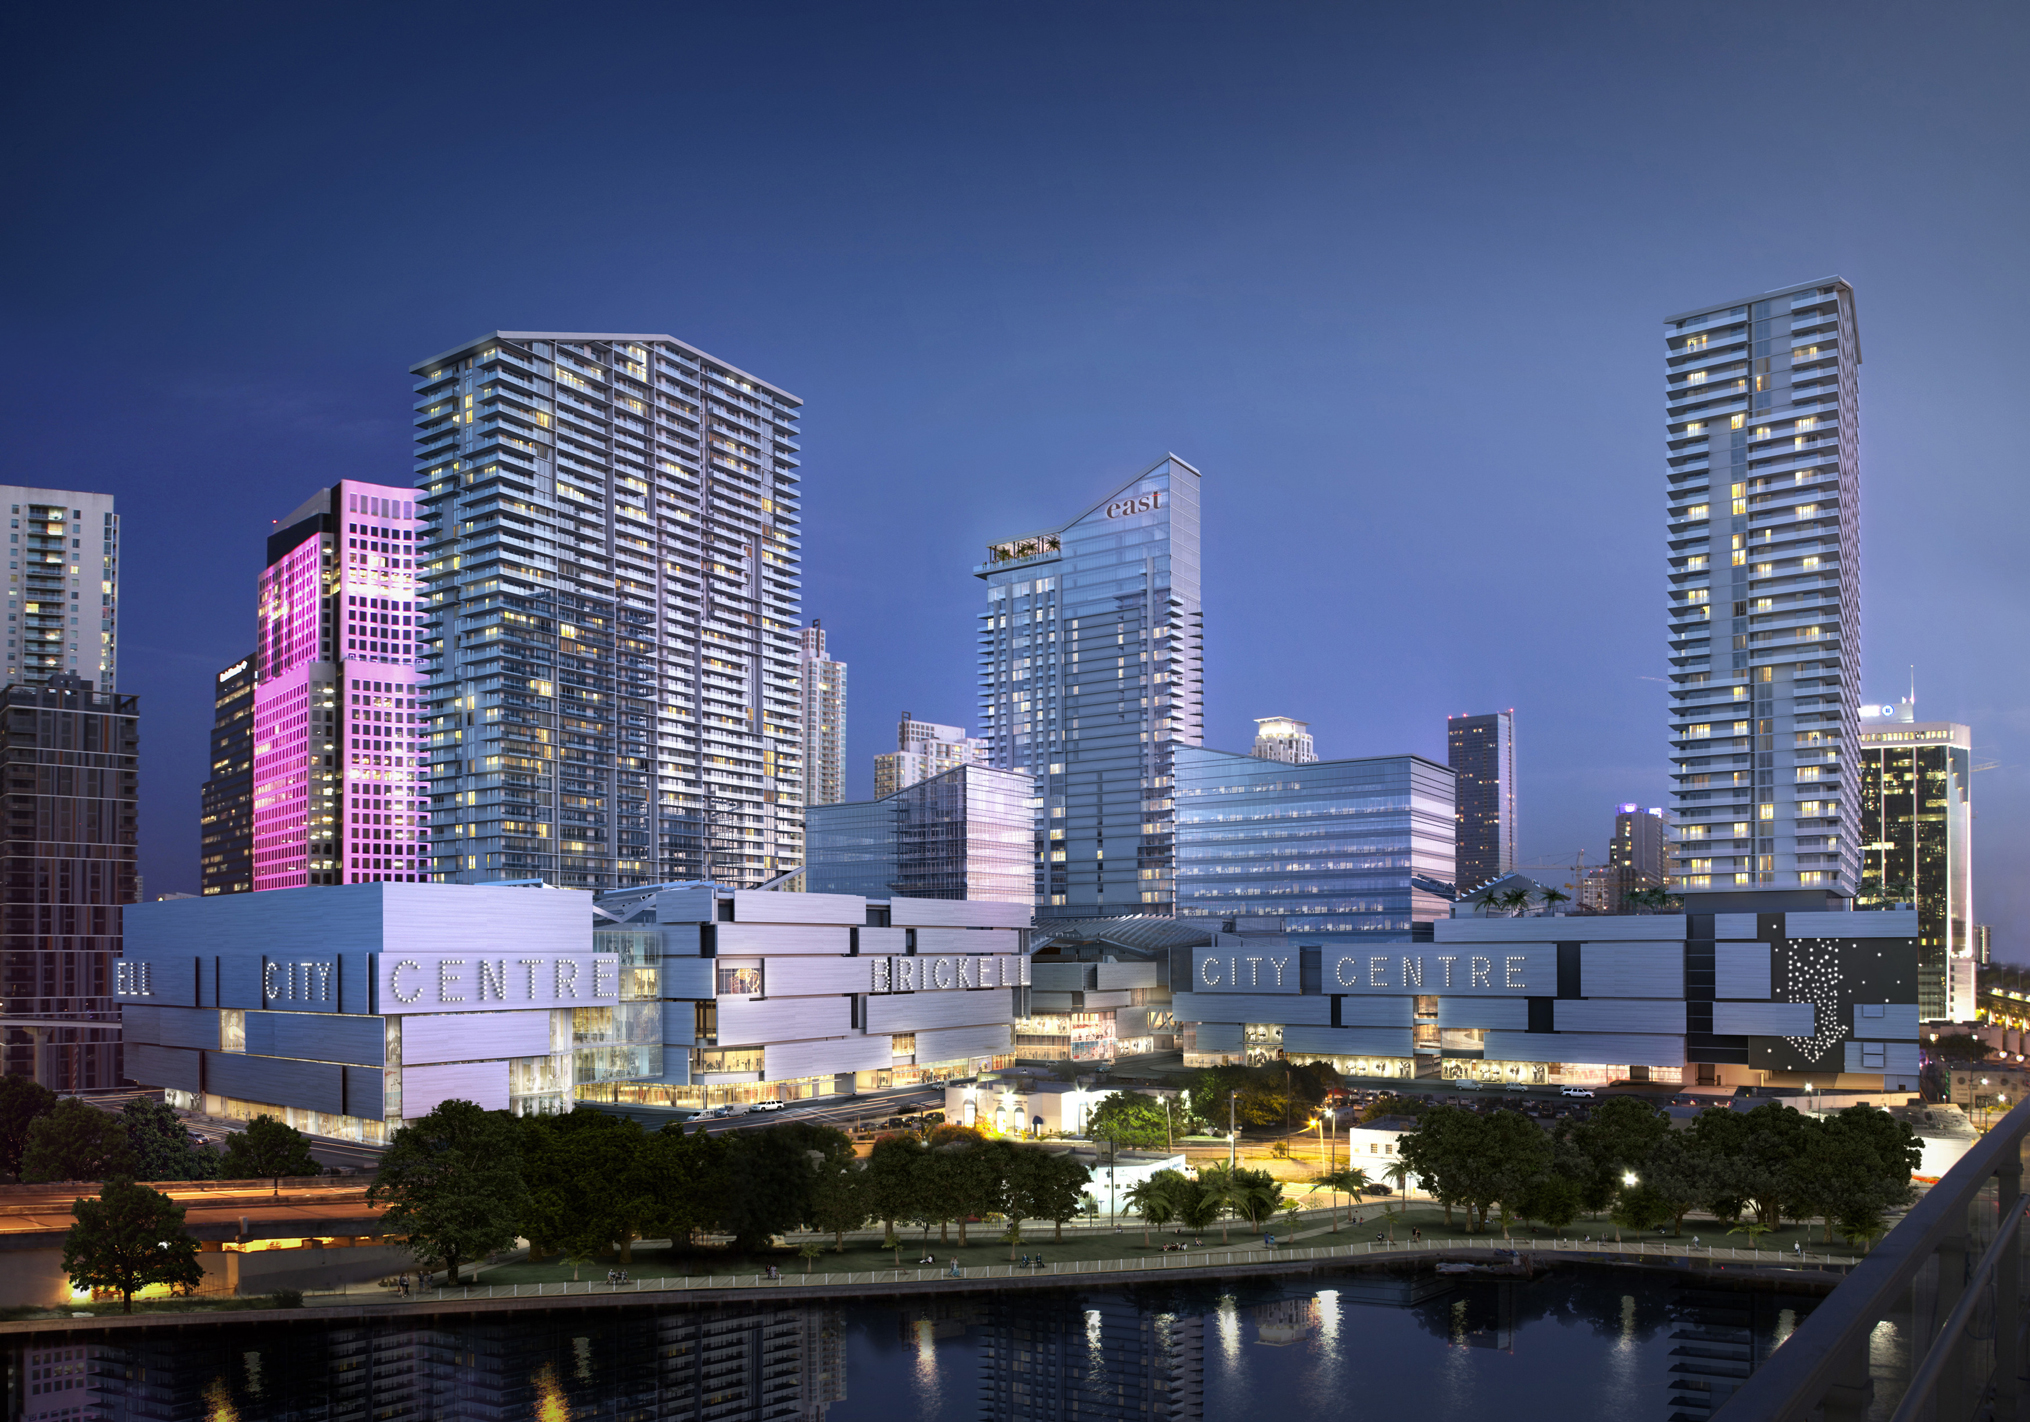 The Brickell area of Miami